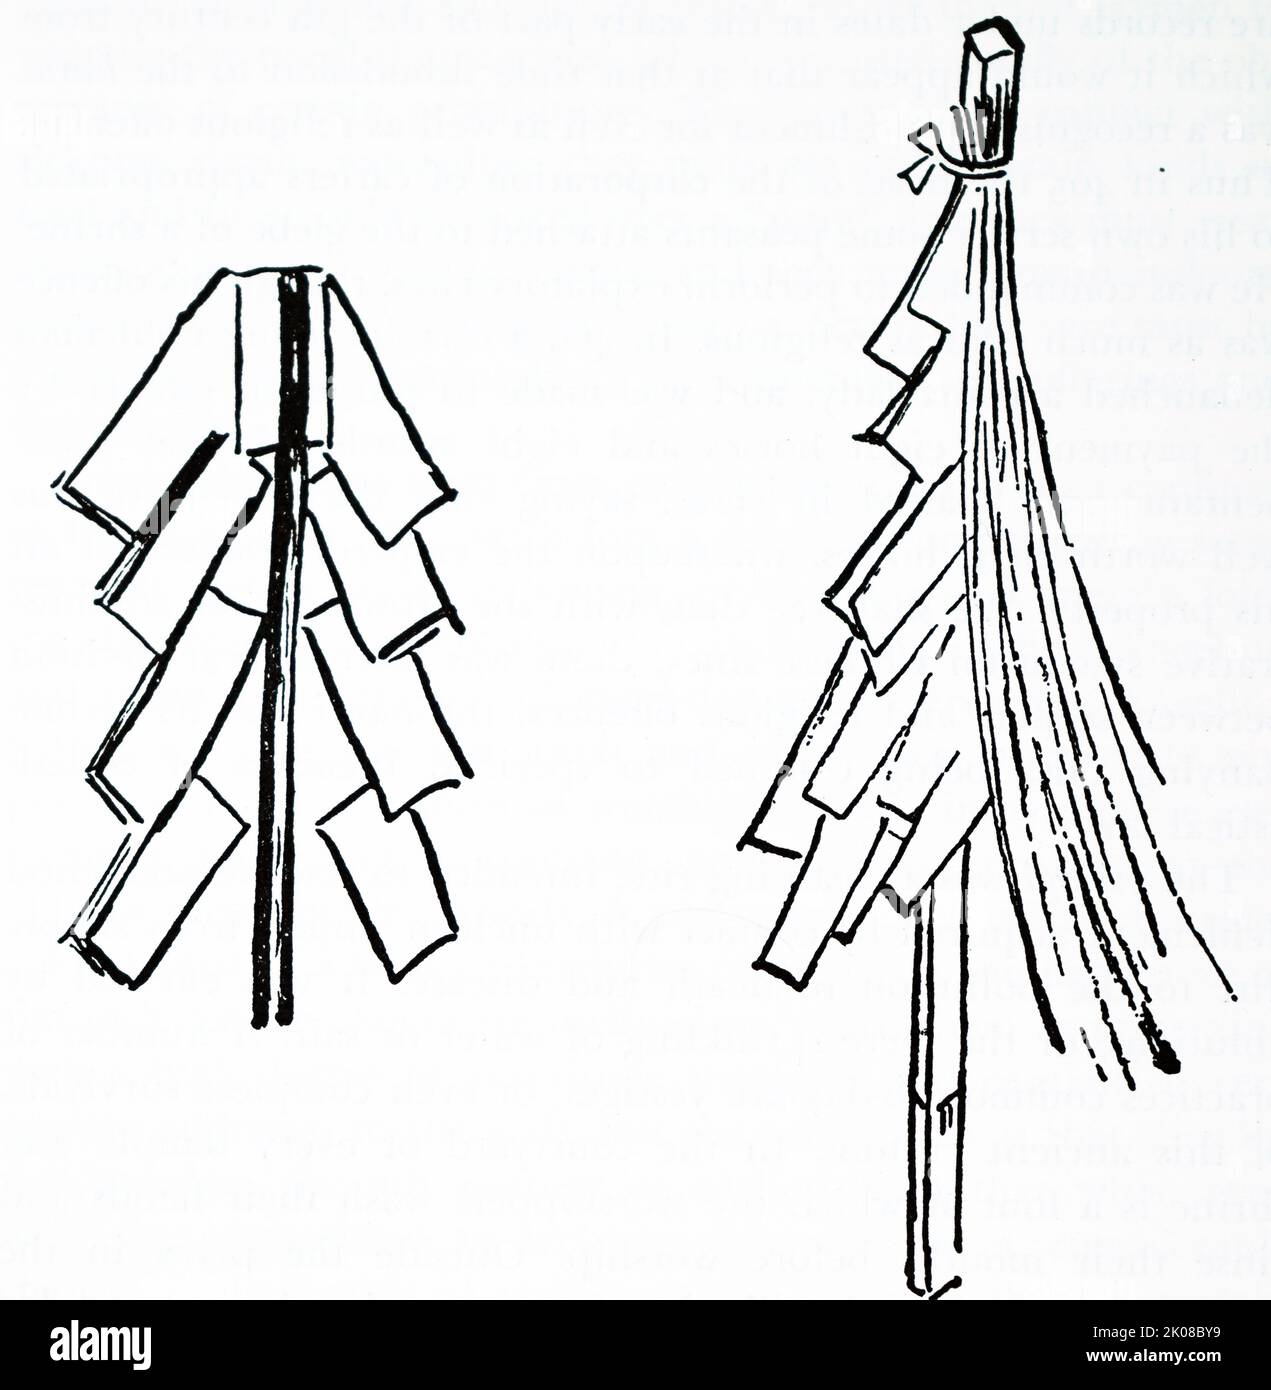 Gohei (Abb. 18). Papierstreifen, die die Opfergaben von Kleidung aus Maulbeerrinde symbolisieren. Nusa (Abb. 19). Reinigungsstab. Papierstreifen und Hanffasern. Gohei und Nusa werden traditionell in schintoischen Reinigungsritualen verwendet Stockfoto